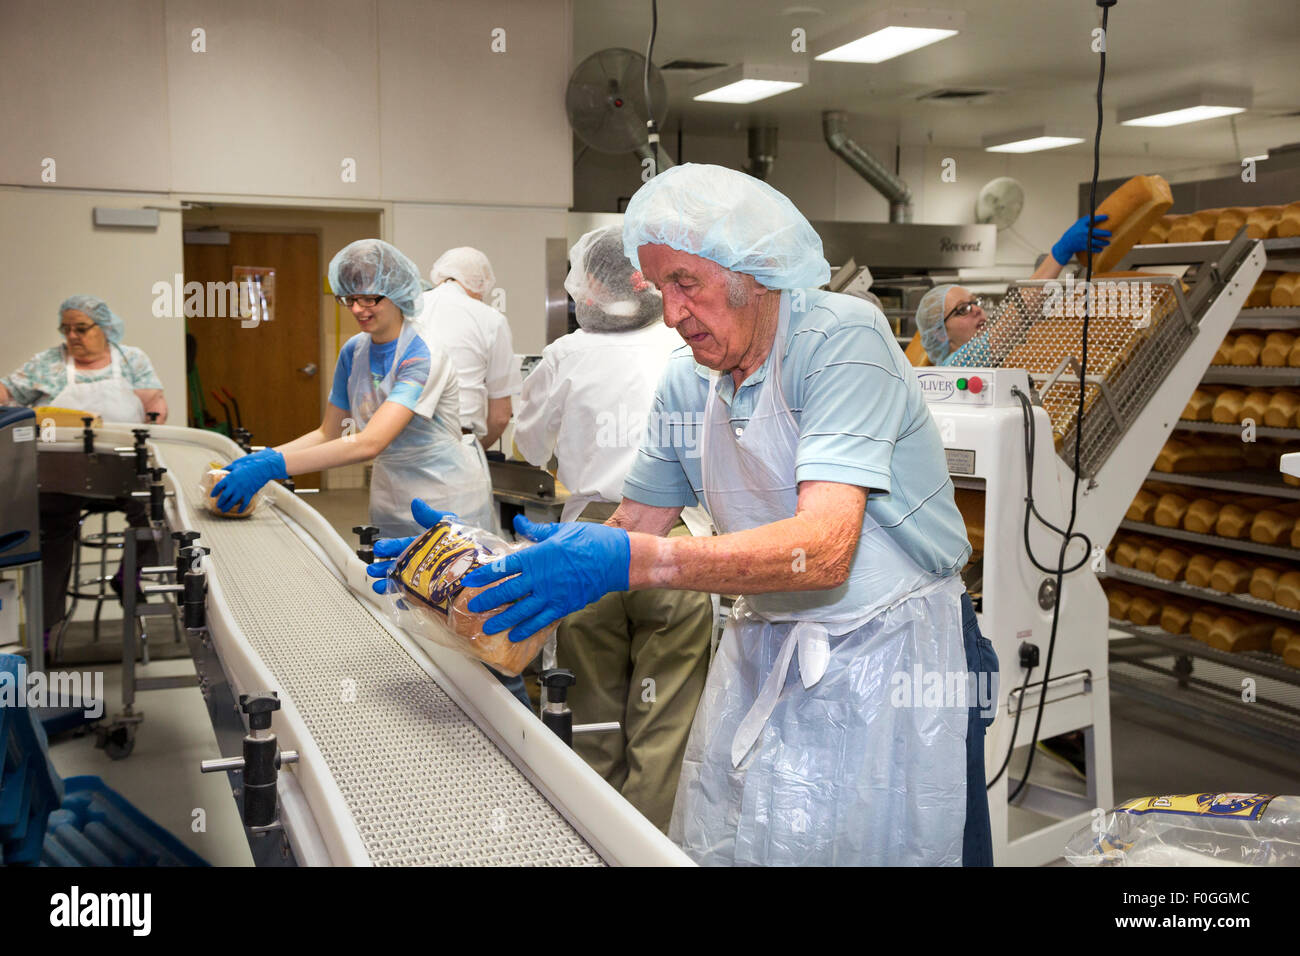 Salt Lake City, Utah - bénévoles travaillent dans la boulangerie à l'Église mormone Bien-être du complexe carré. Banque D'Images